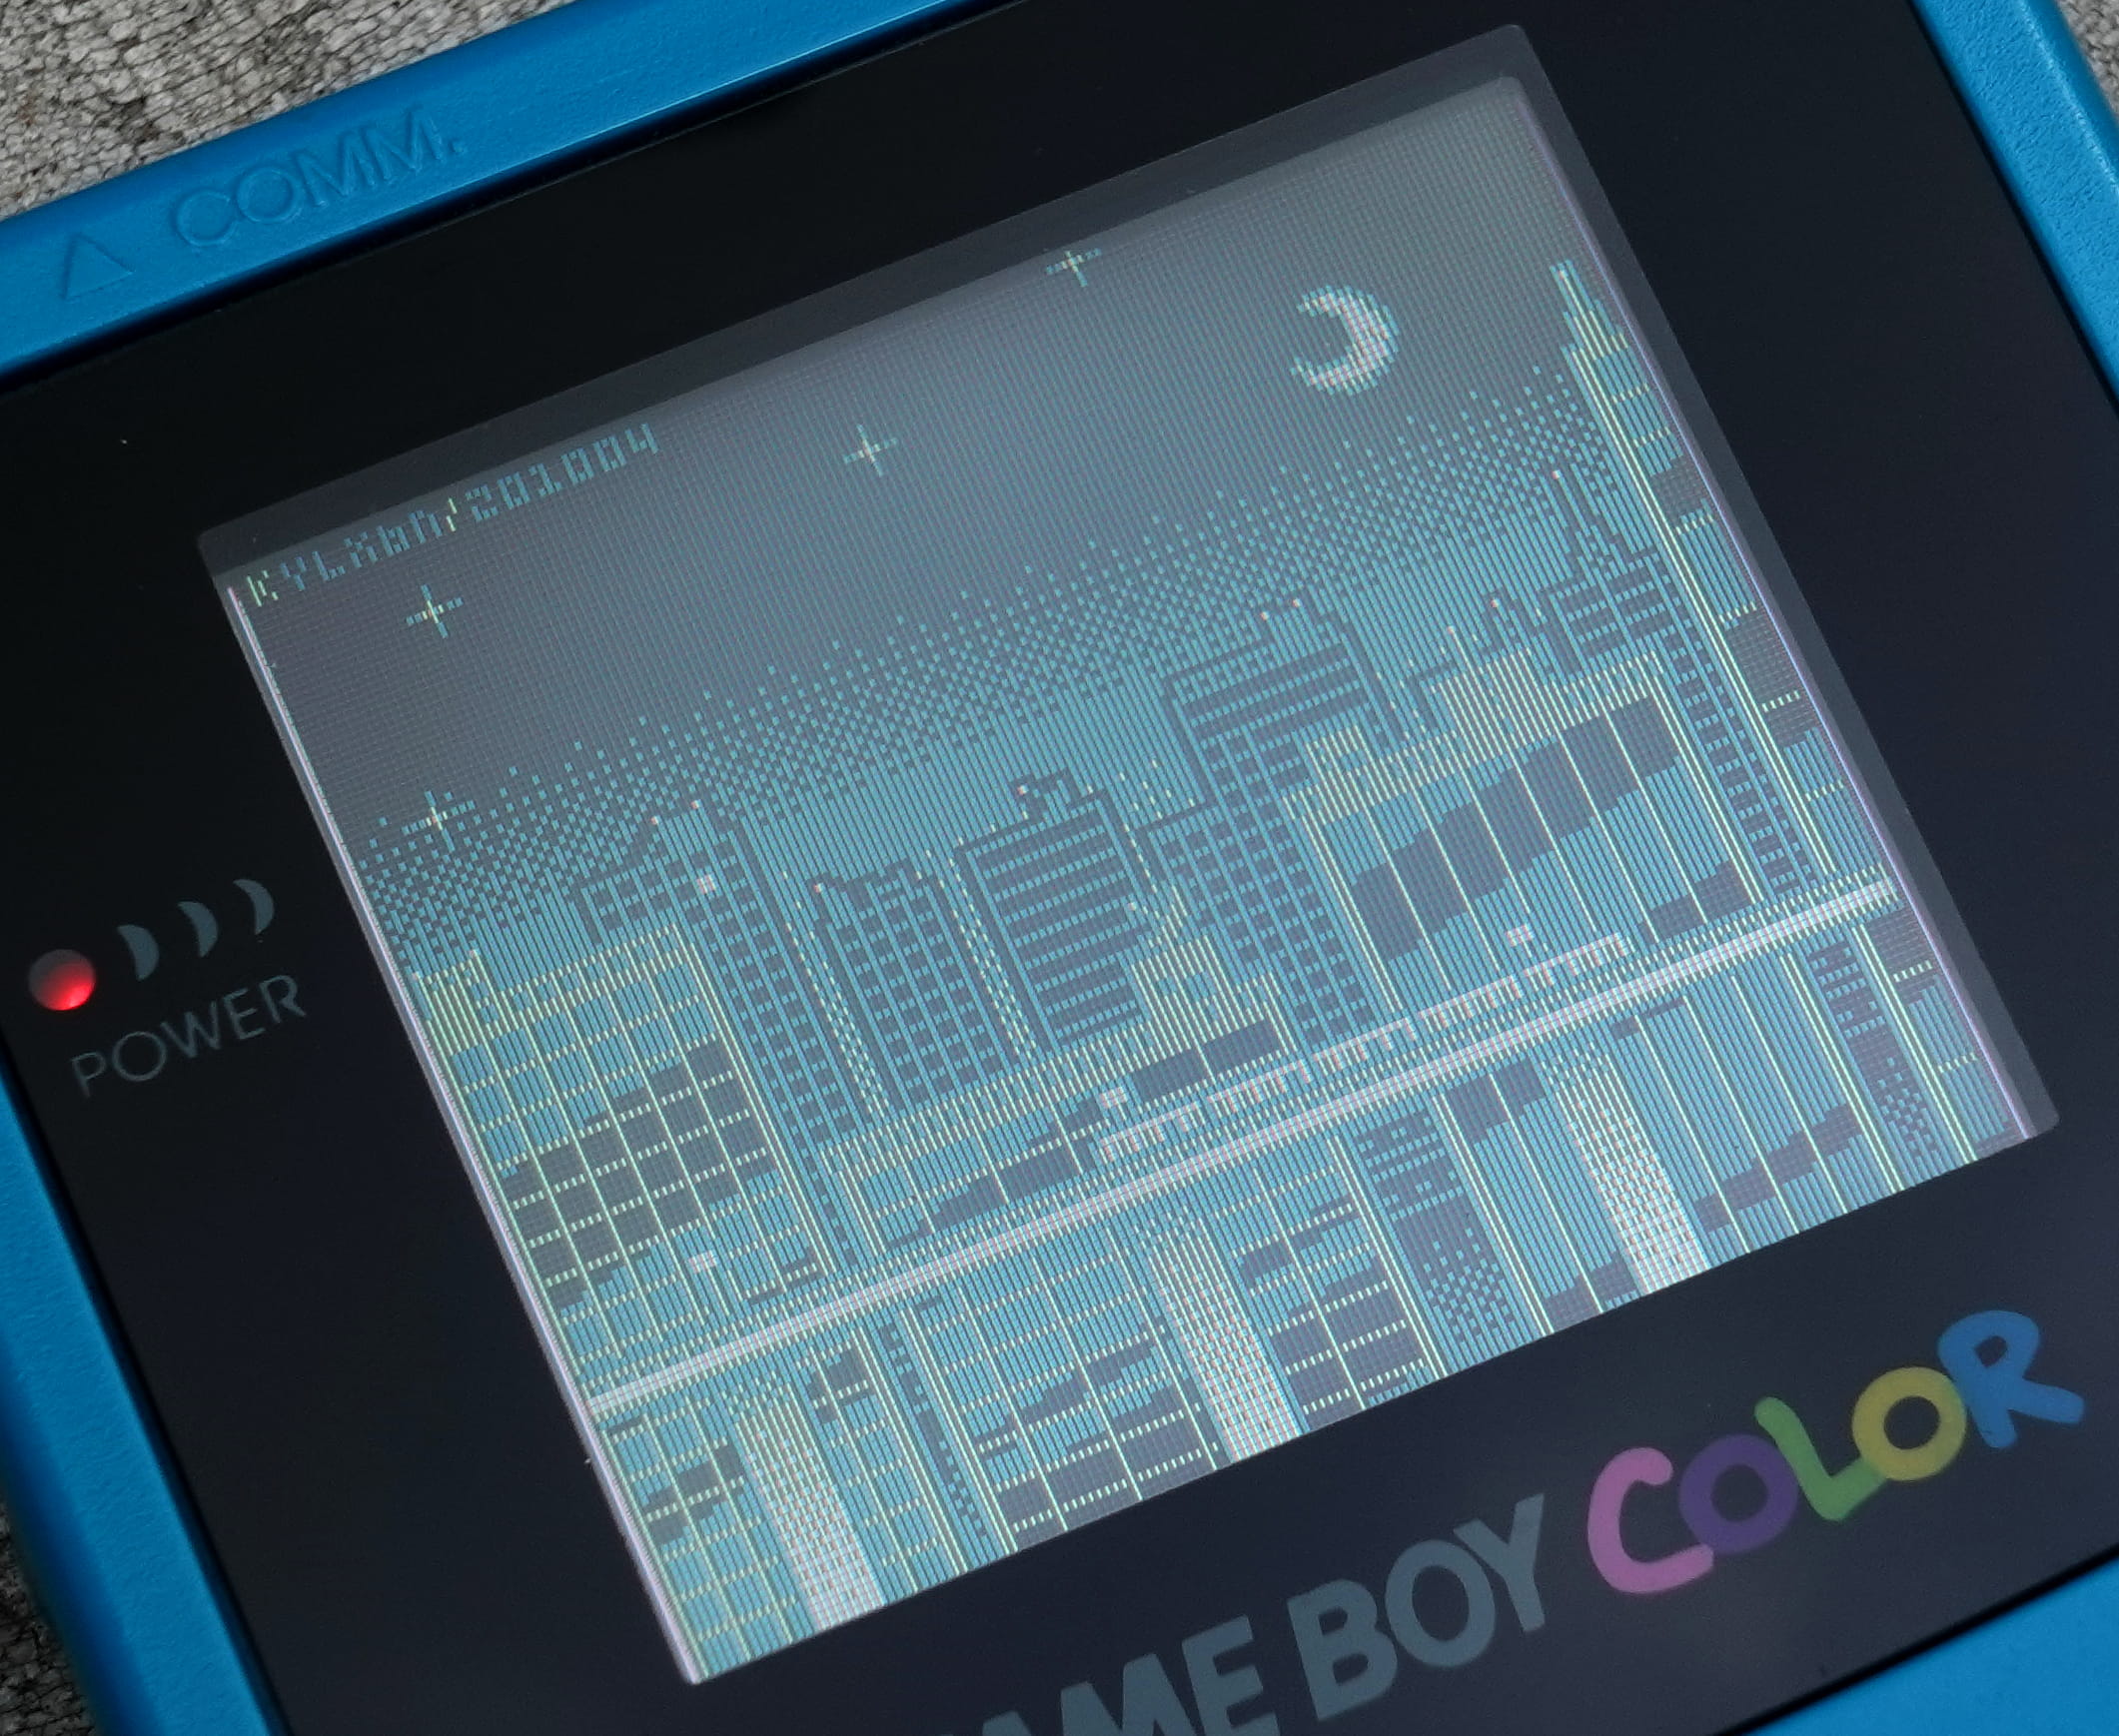 Bildo de Game Boy Color-ekrano montranta pikselan arton